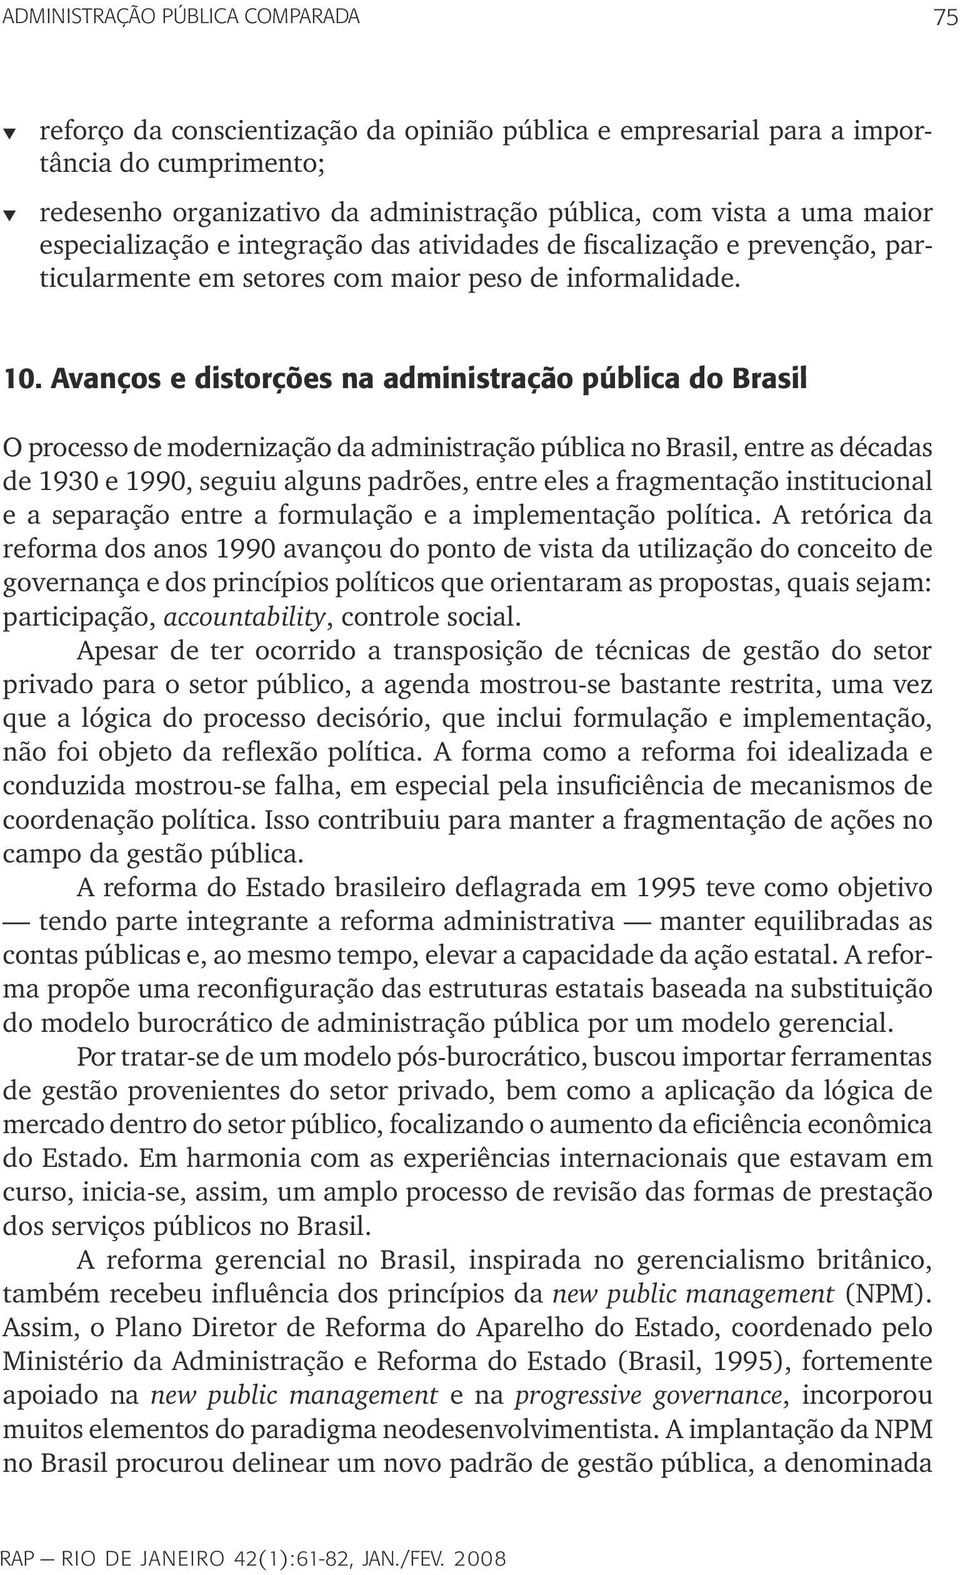 Avanços e distorções na administração pública do Brasil O processo de modernização da administração pública no Brasil, entre as décadas de 1930 e 1990, seguiu alguns padrões, entre eles a